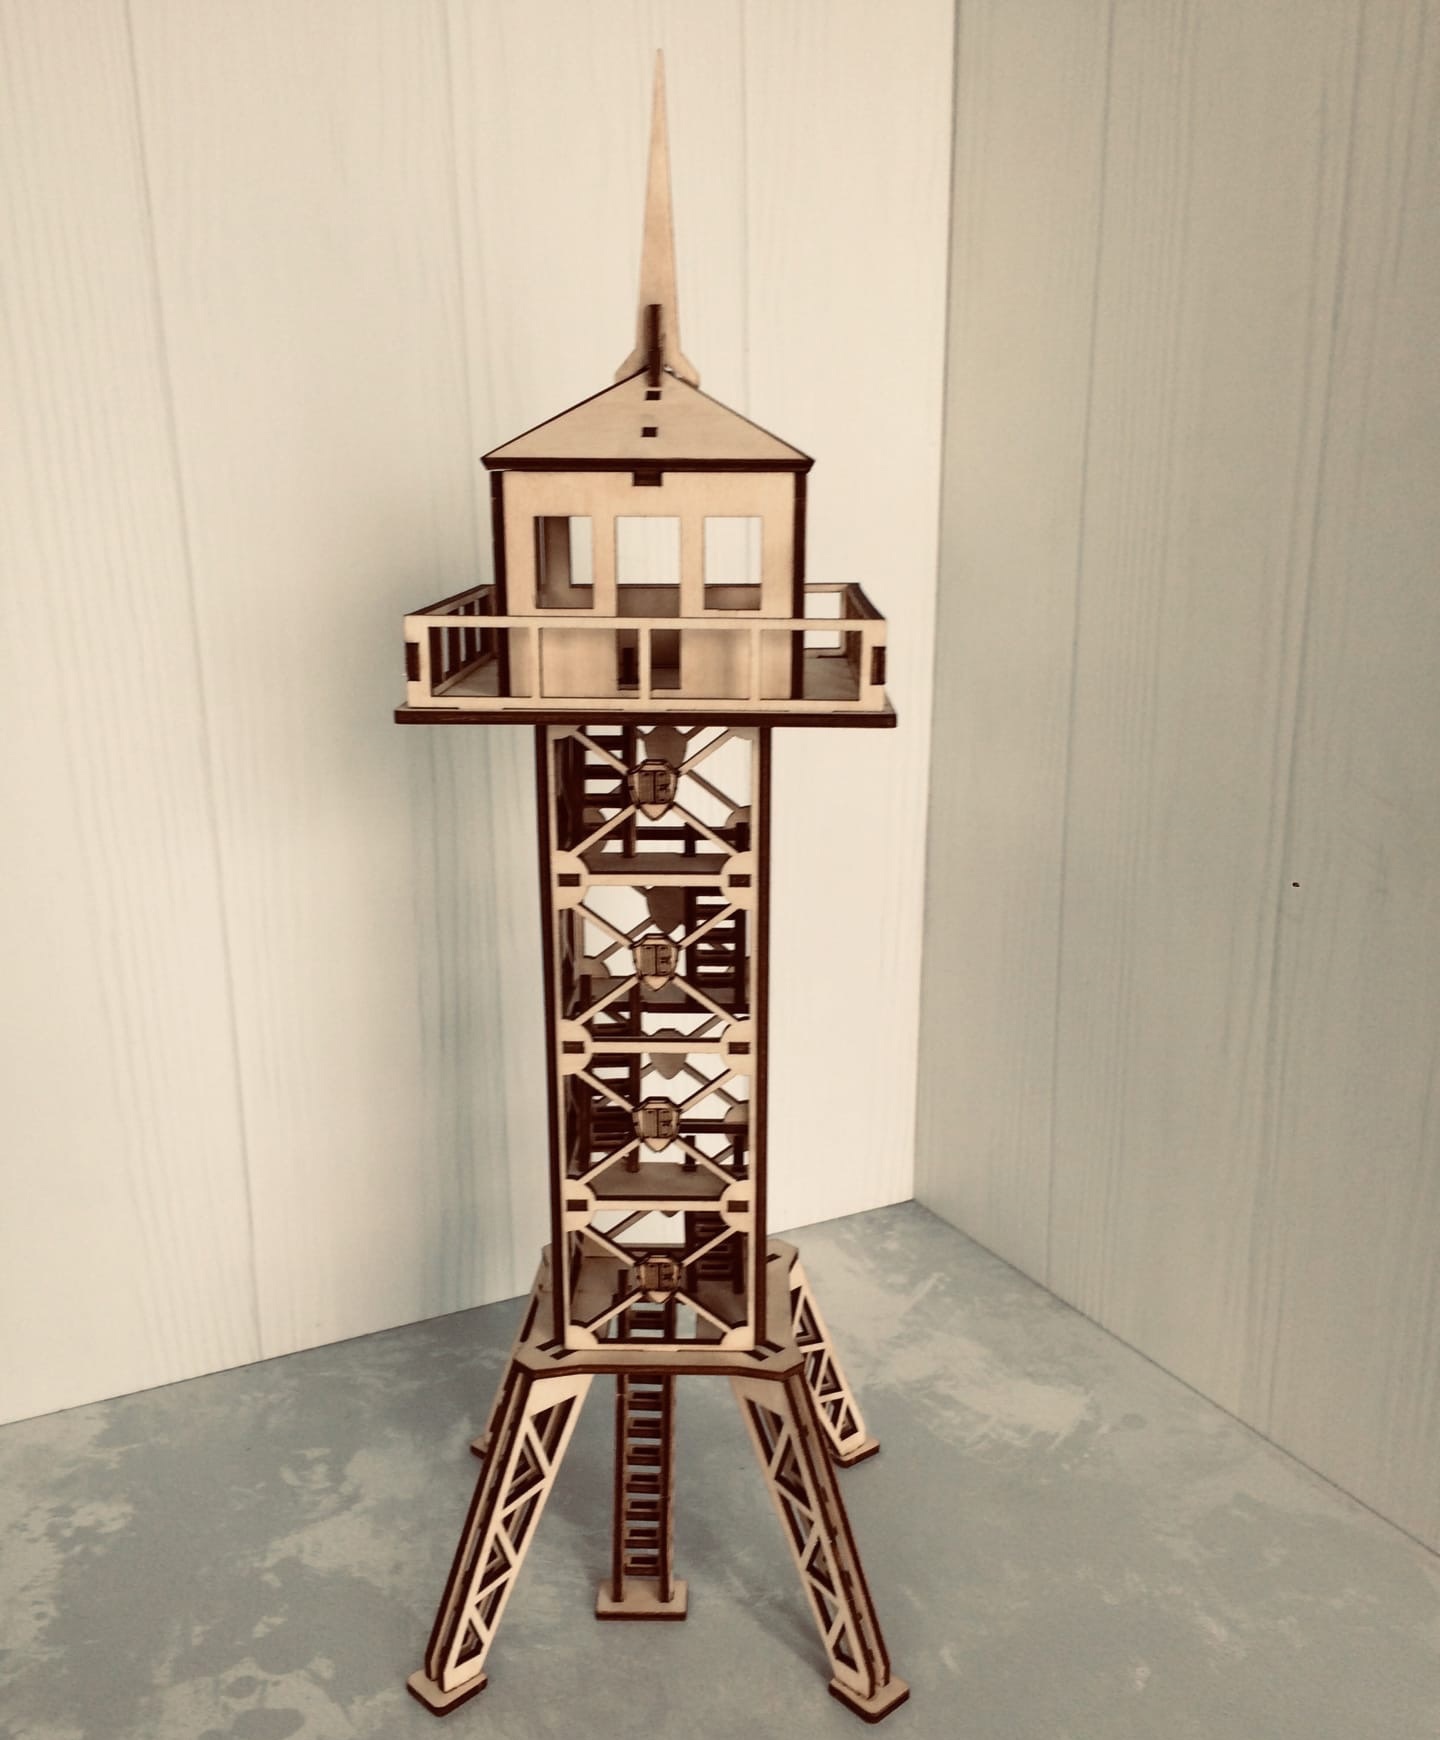 Modelo de madera 3d de la torre de observación militar cortada con láser